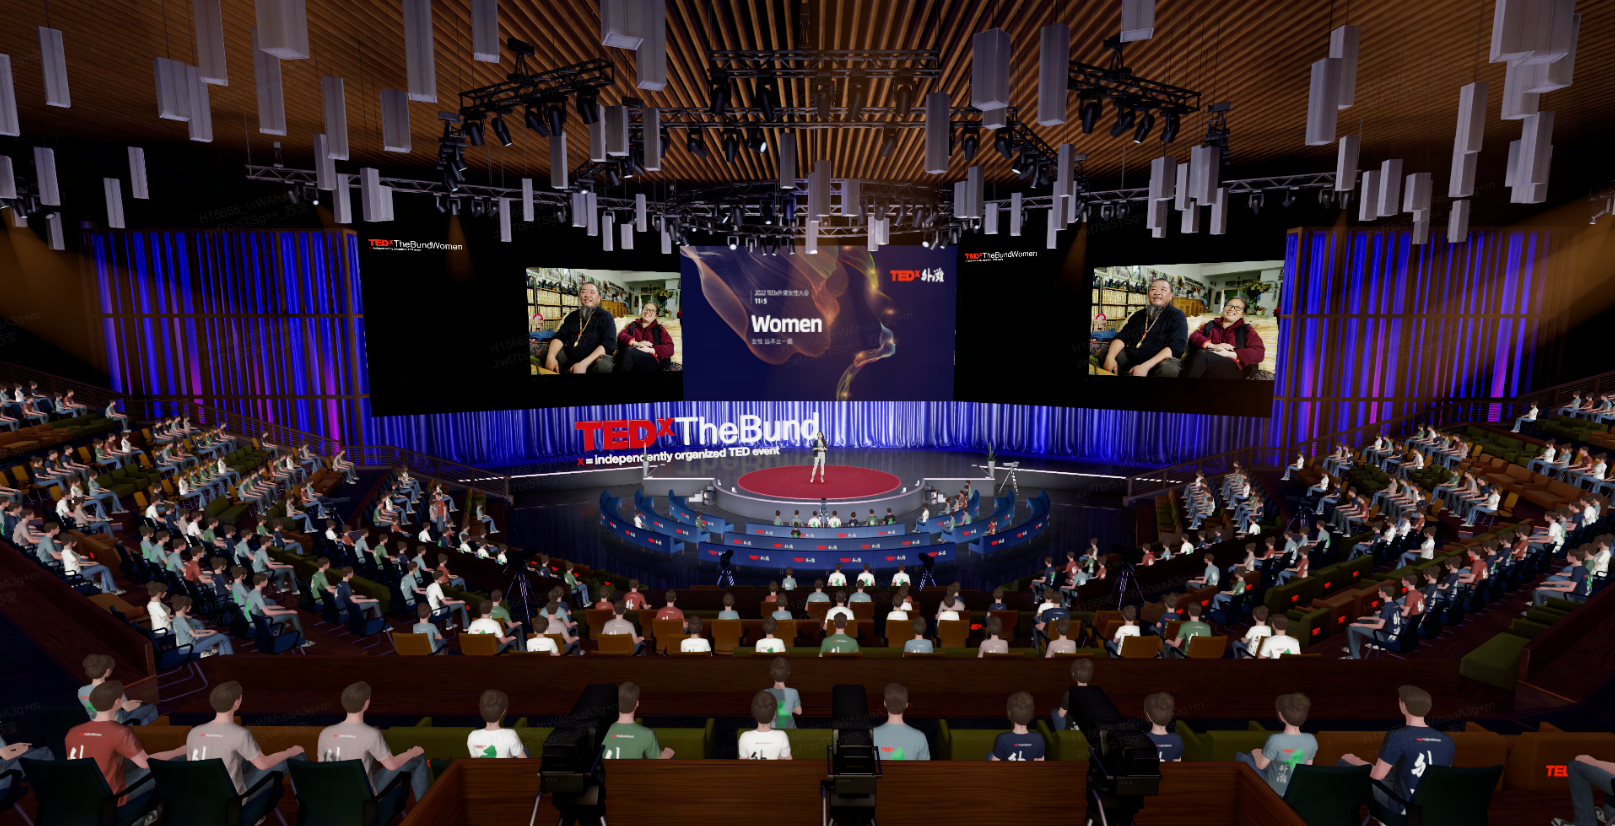 图片展示了一个TEDx活动现场，观众聚焦于讲台上的演讲者，场地布局现代，氛围正式。